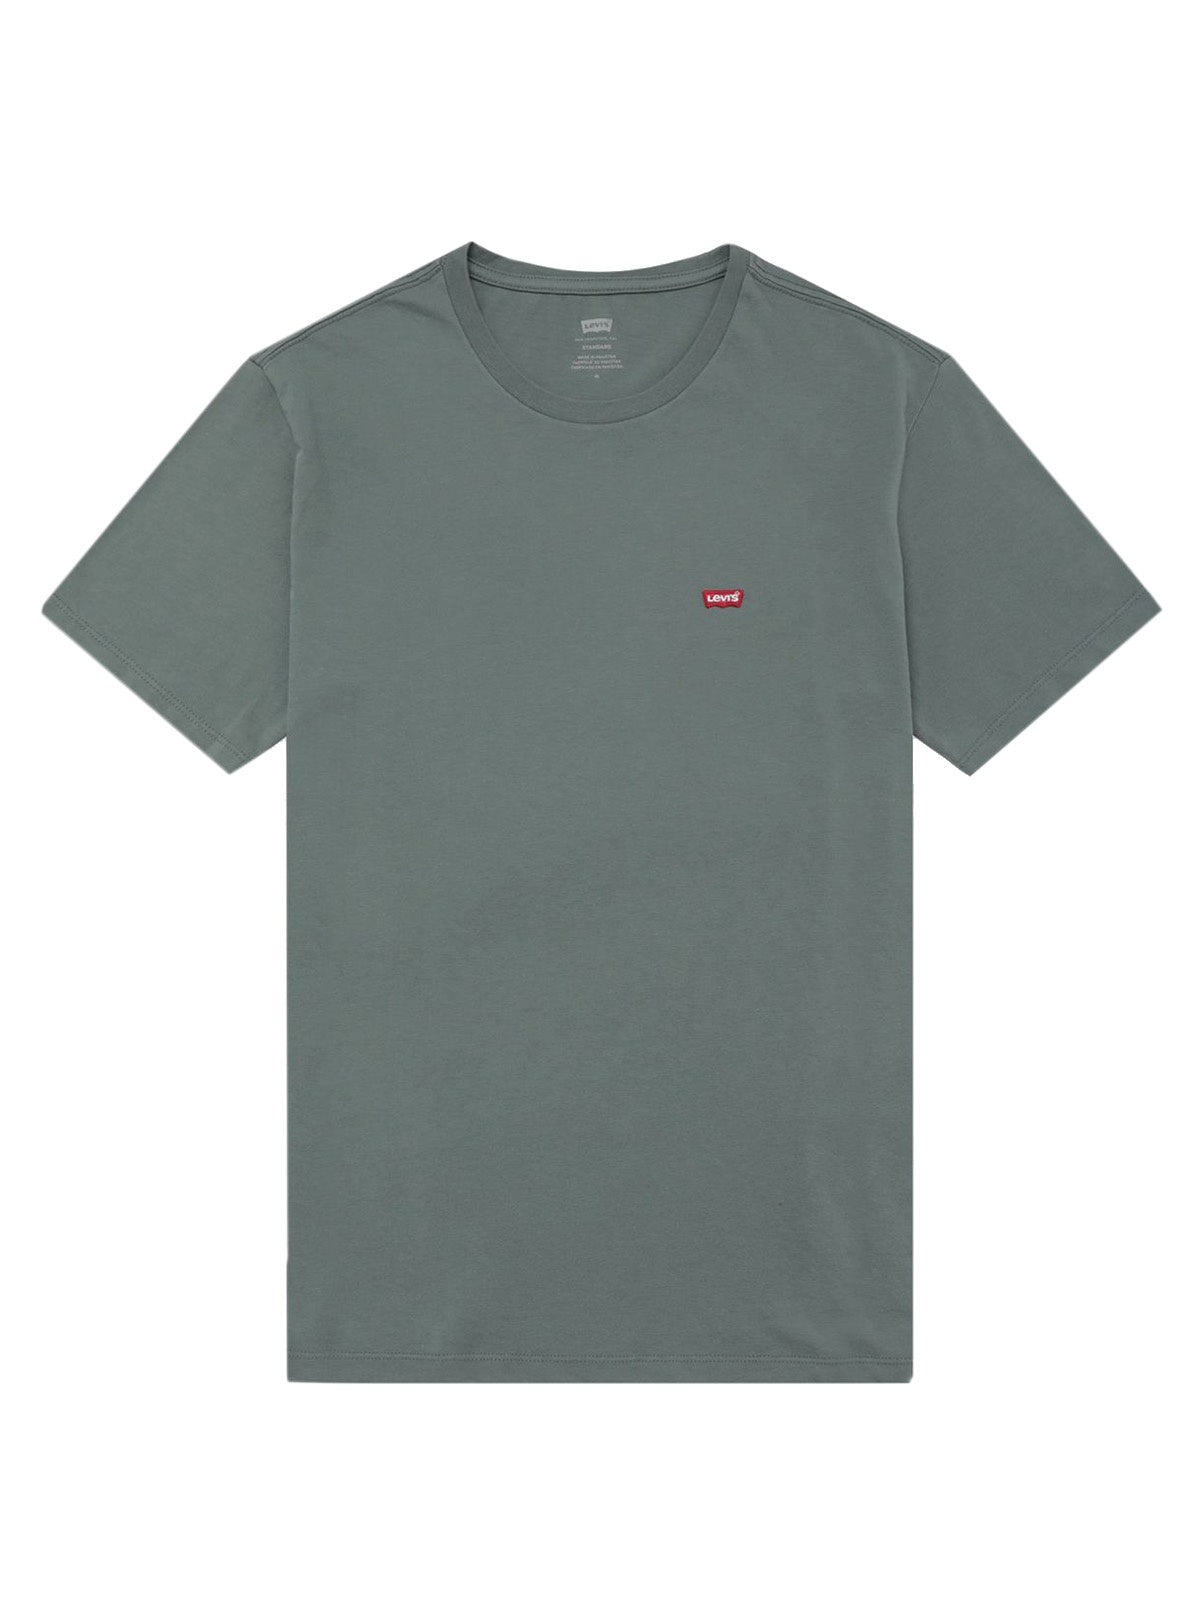 T-shirt Uomo Levi's - T-Shirt Housemark Original - Verde